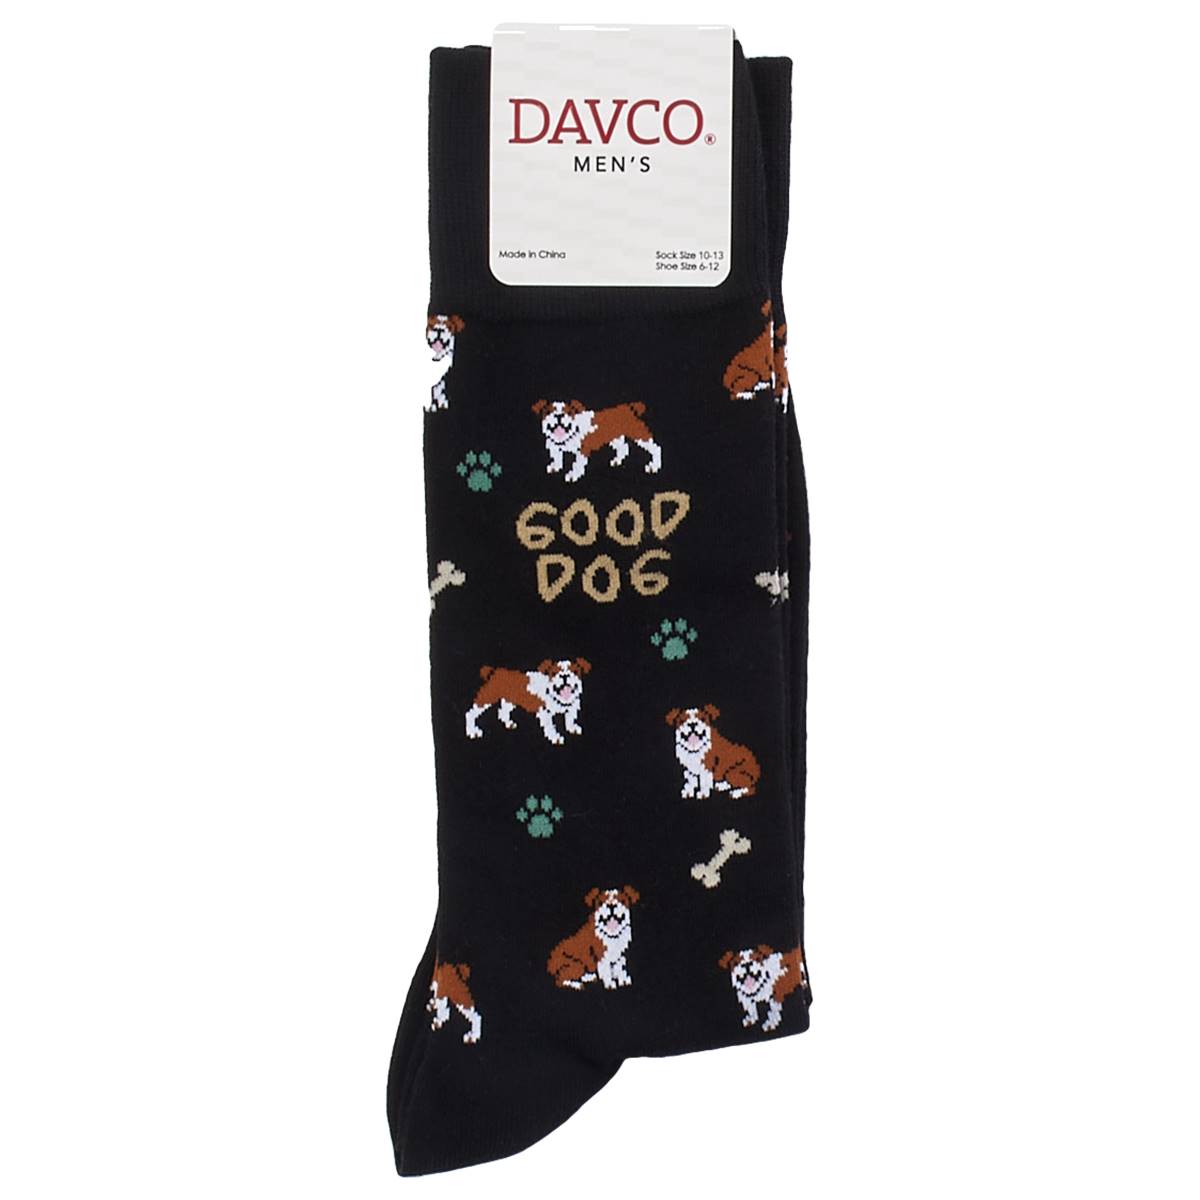 Mens Davco Dog & Bone Socks